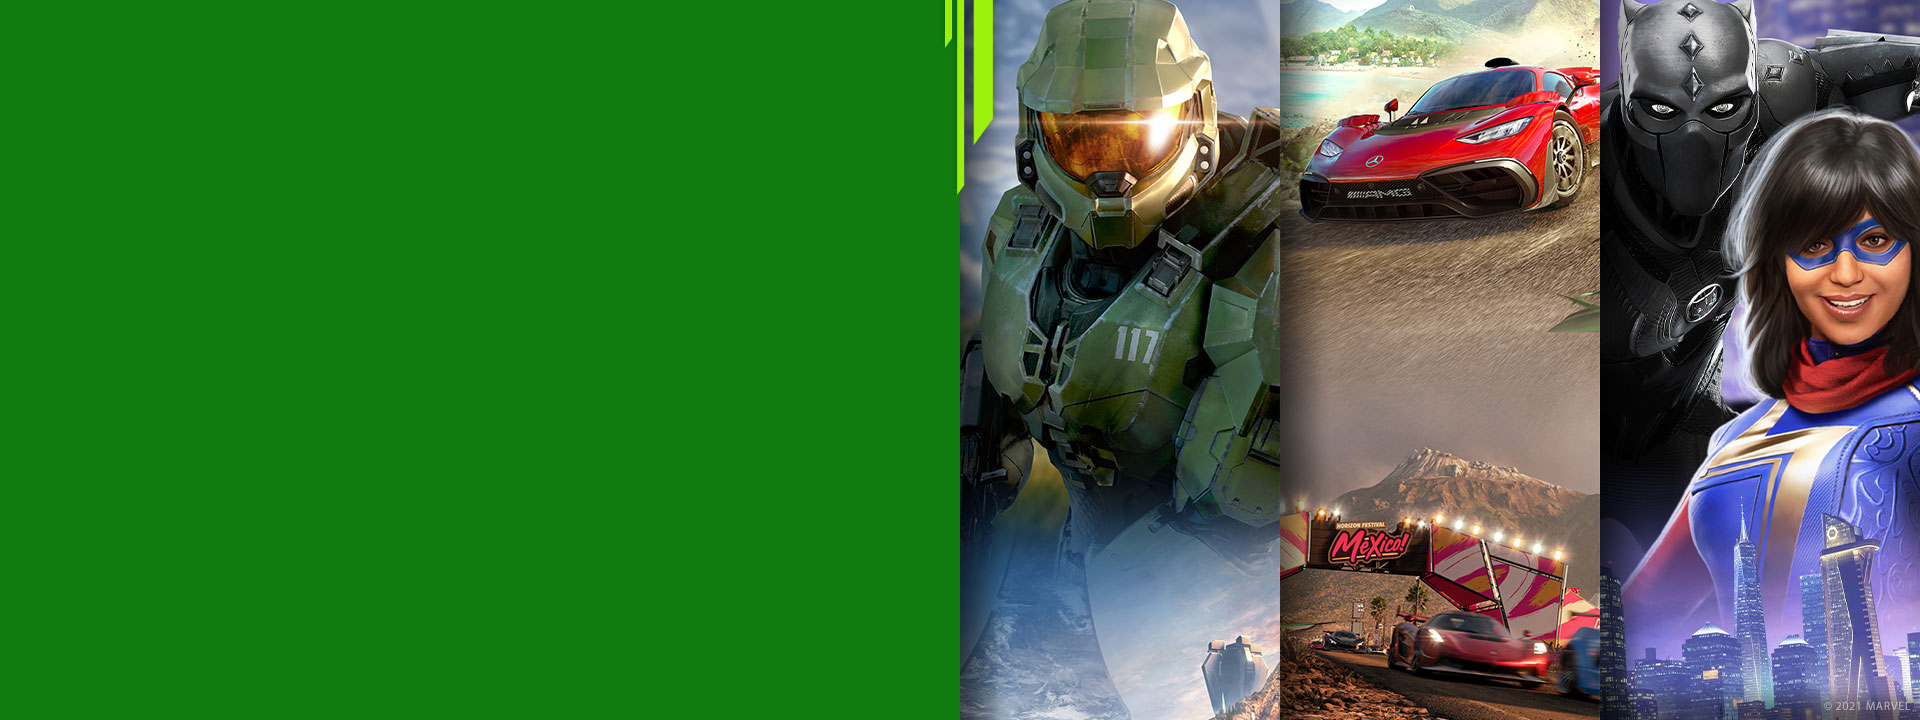 Фронтальный вид различных персонажей игр Xbox из Halo Infinite, Forza Horizon 5 и Marvel's Avengers.